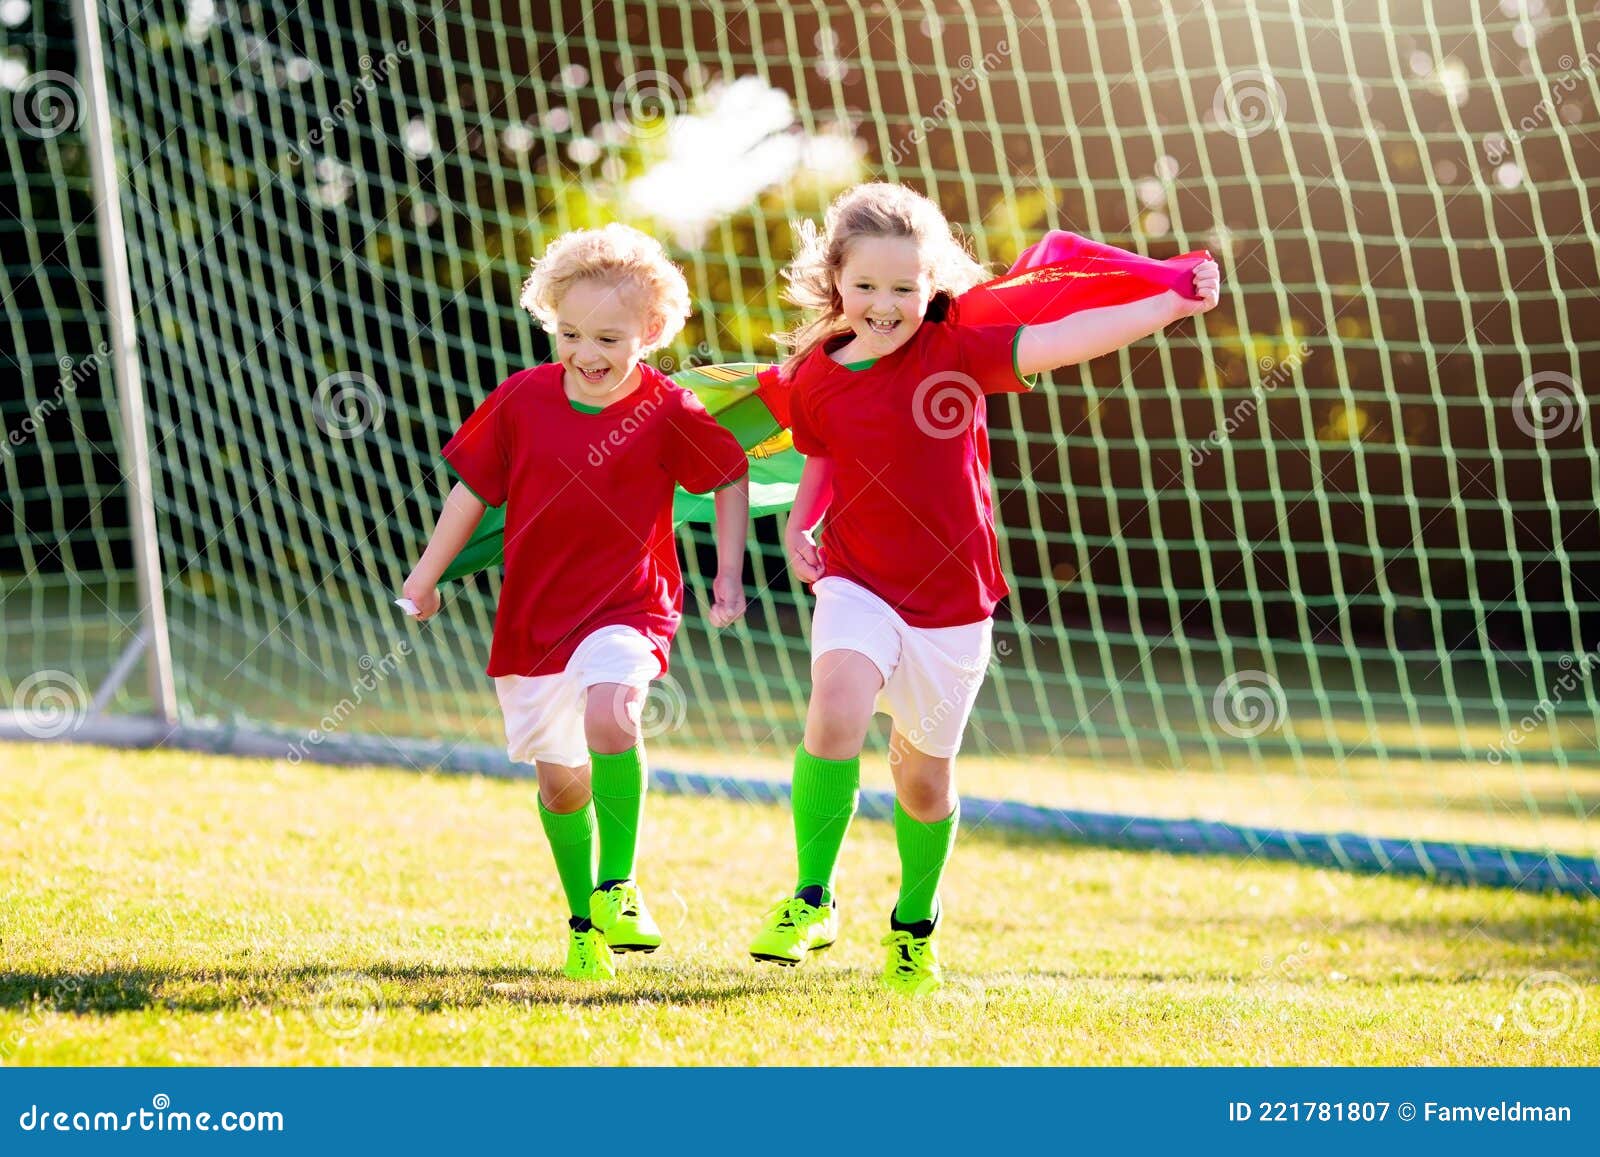 Crianças Jogam Jogo De Futebol. Crianças Em Duas Equipes Chutando